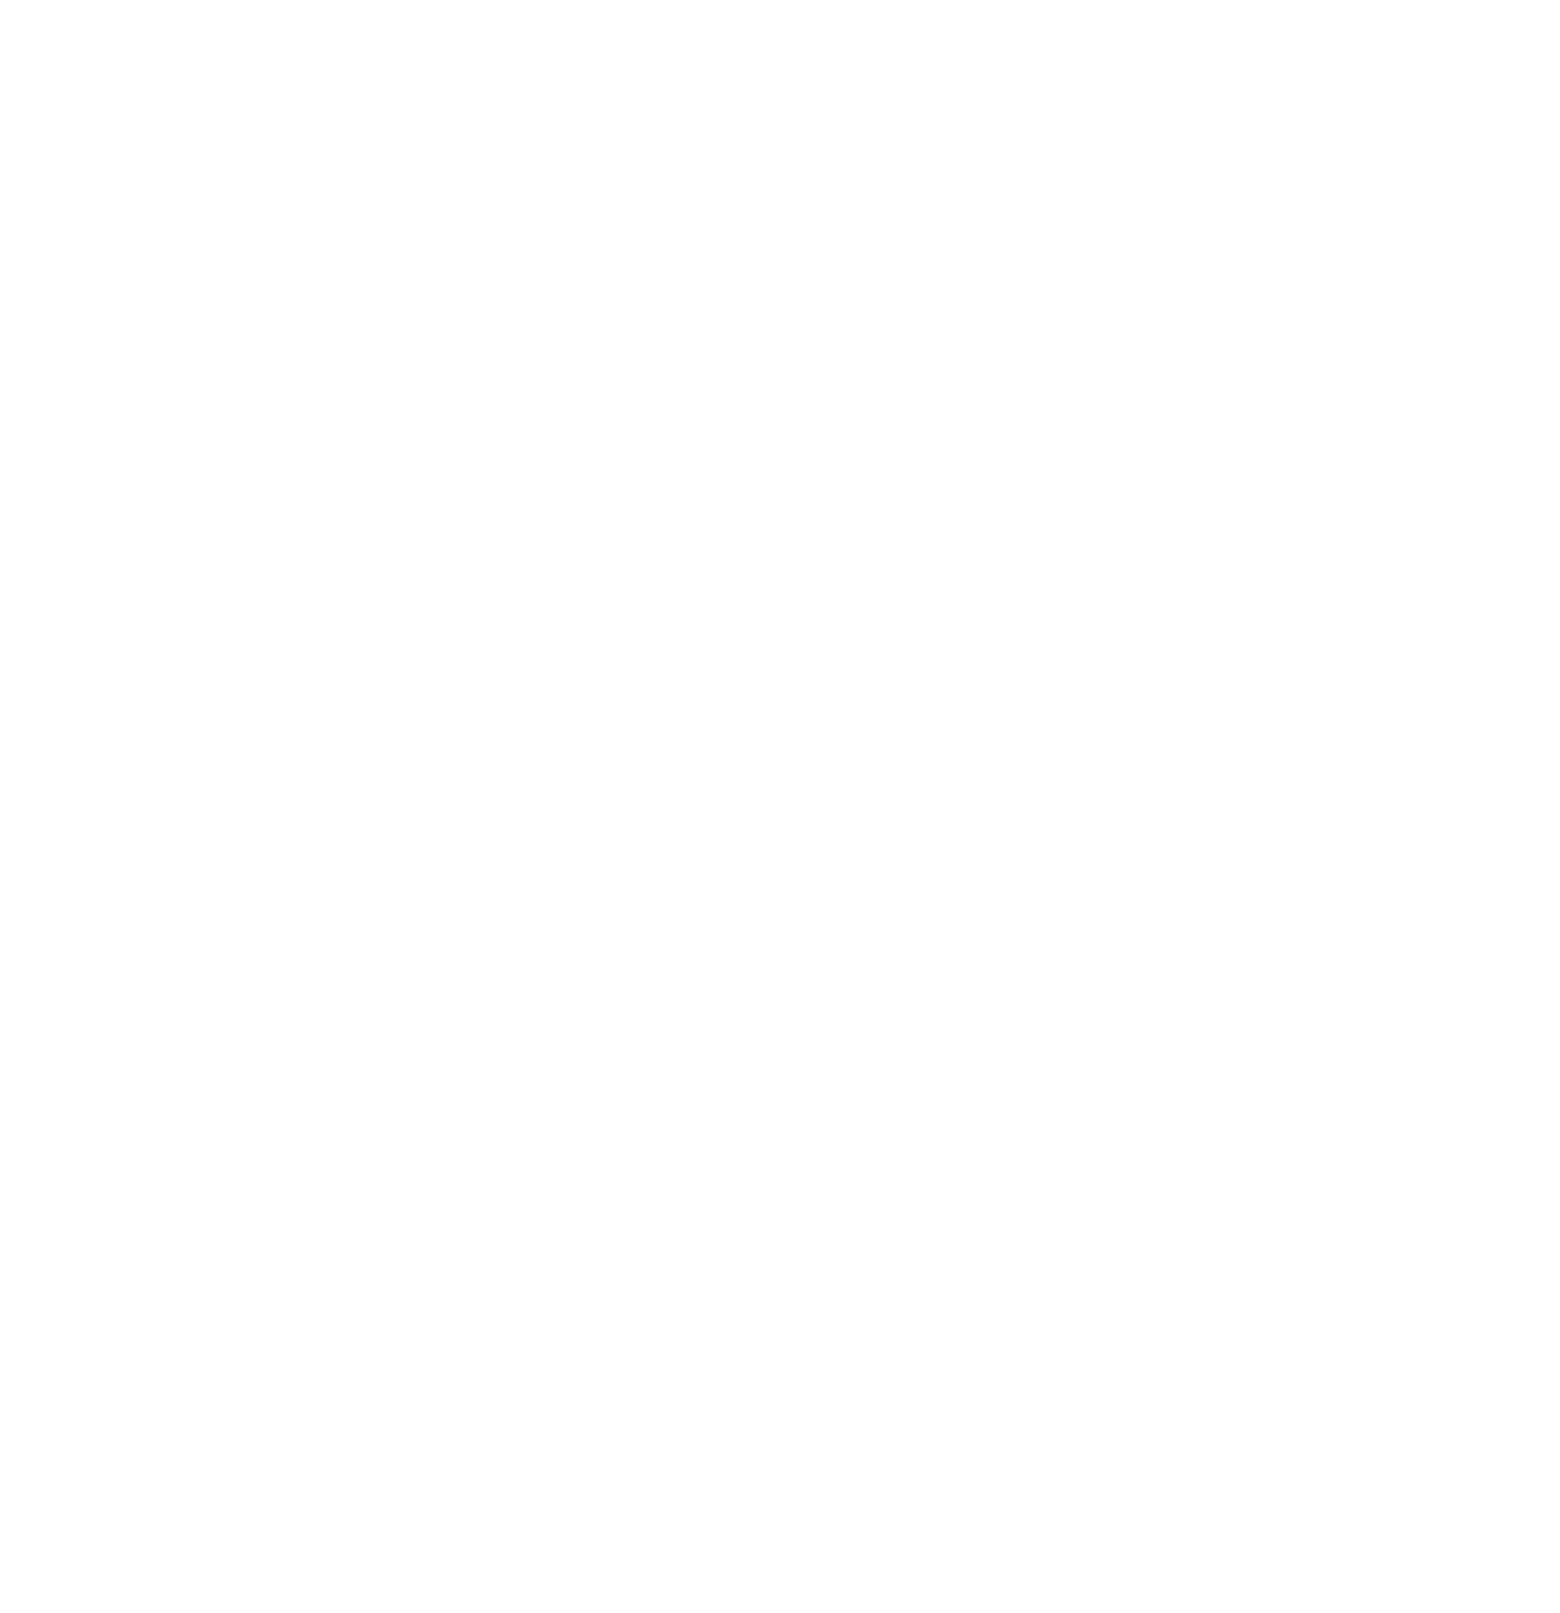 USADA logo in white.